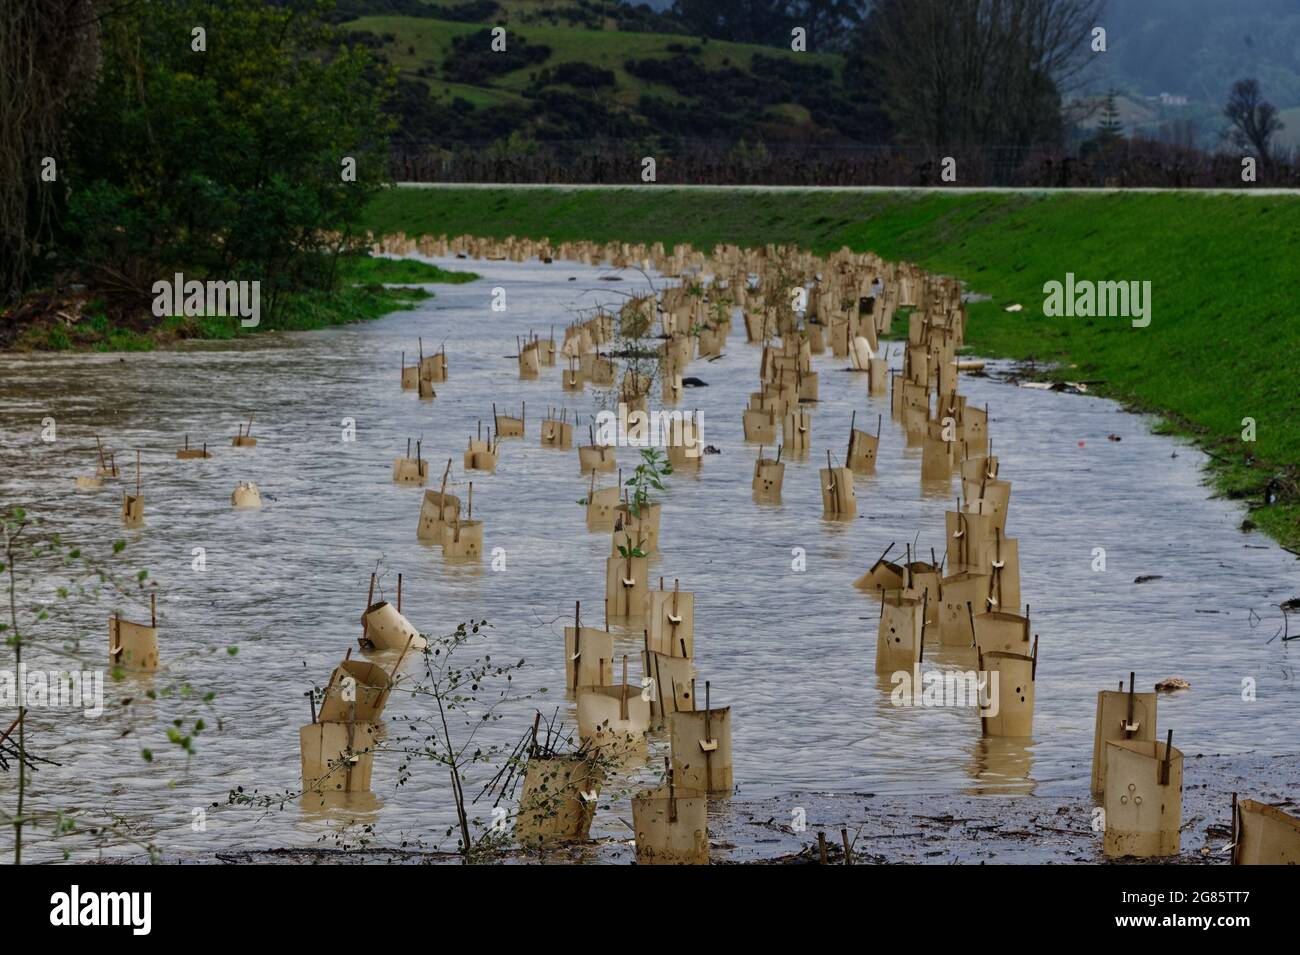 NEUE BAUMANPFLANZUNGEN ÜBERSCHWEMMT VON HOCHWASSER. Motueka, Neuseeland 17. Juli 2021. Neue Pflanzungen zur Bekämpfung des Klimawandels werden während der Überschwemmungen auf der Südinsel Neuseelands durch den überfluteten Motueka River überschwemmt. © Anne Webber / Alamy Live News Stockfoto